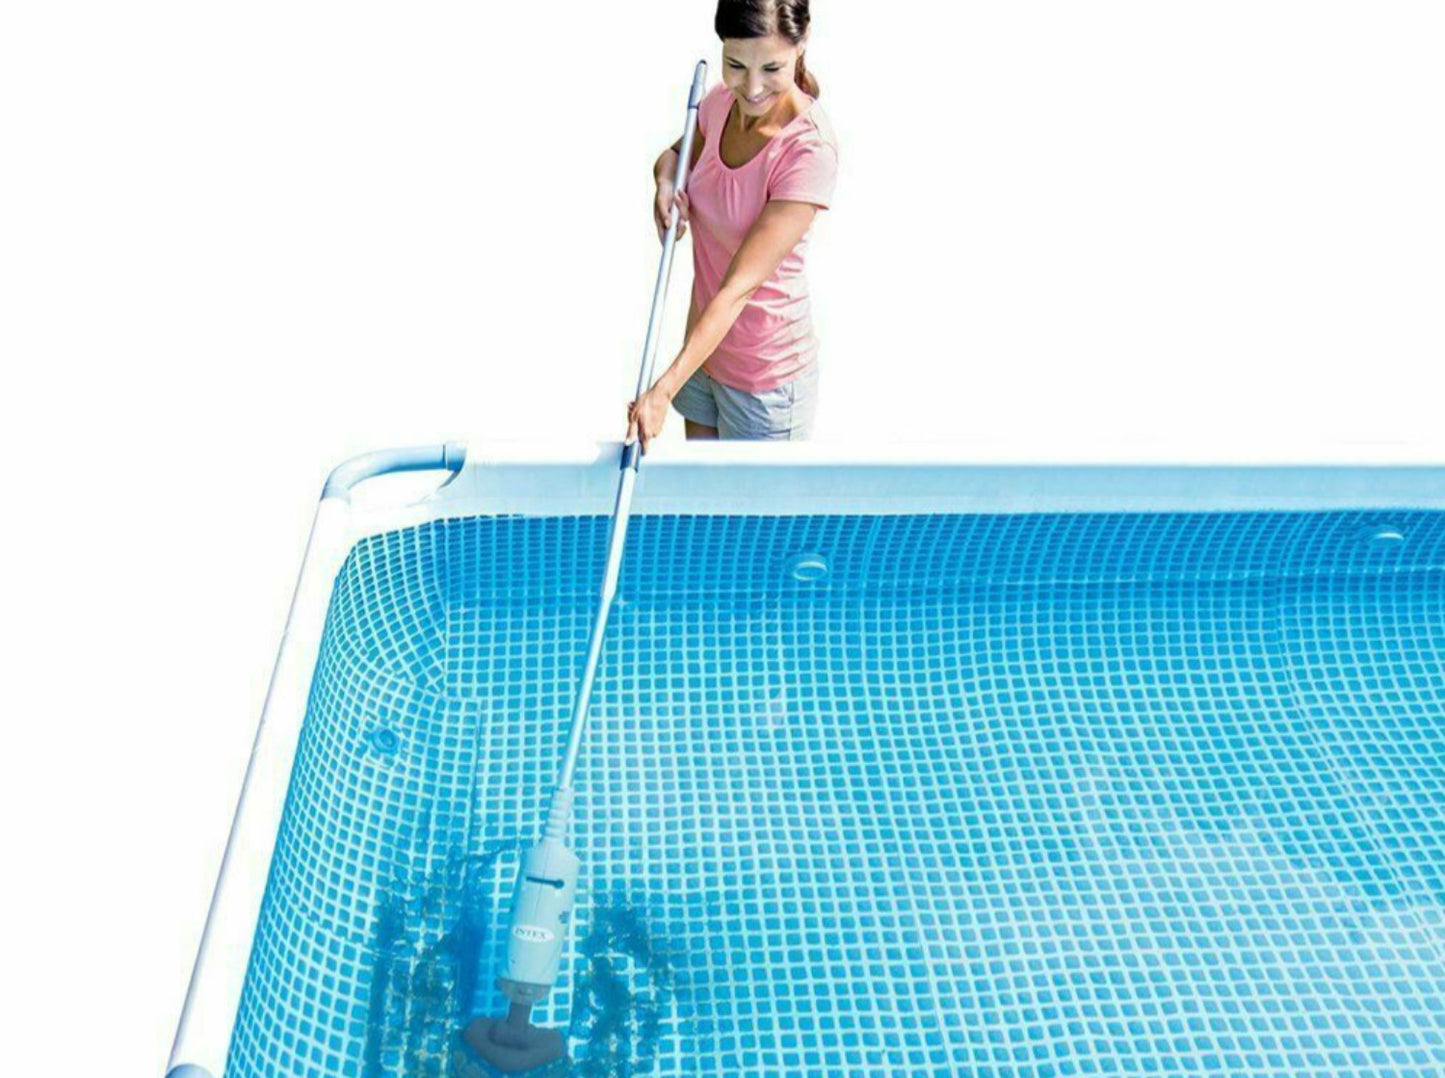 Vacuum aspiratore ricaricabile per piscina e Spa fuori terra Intex 28620